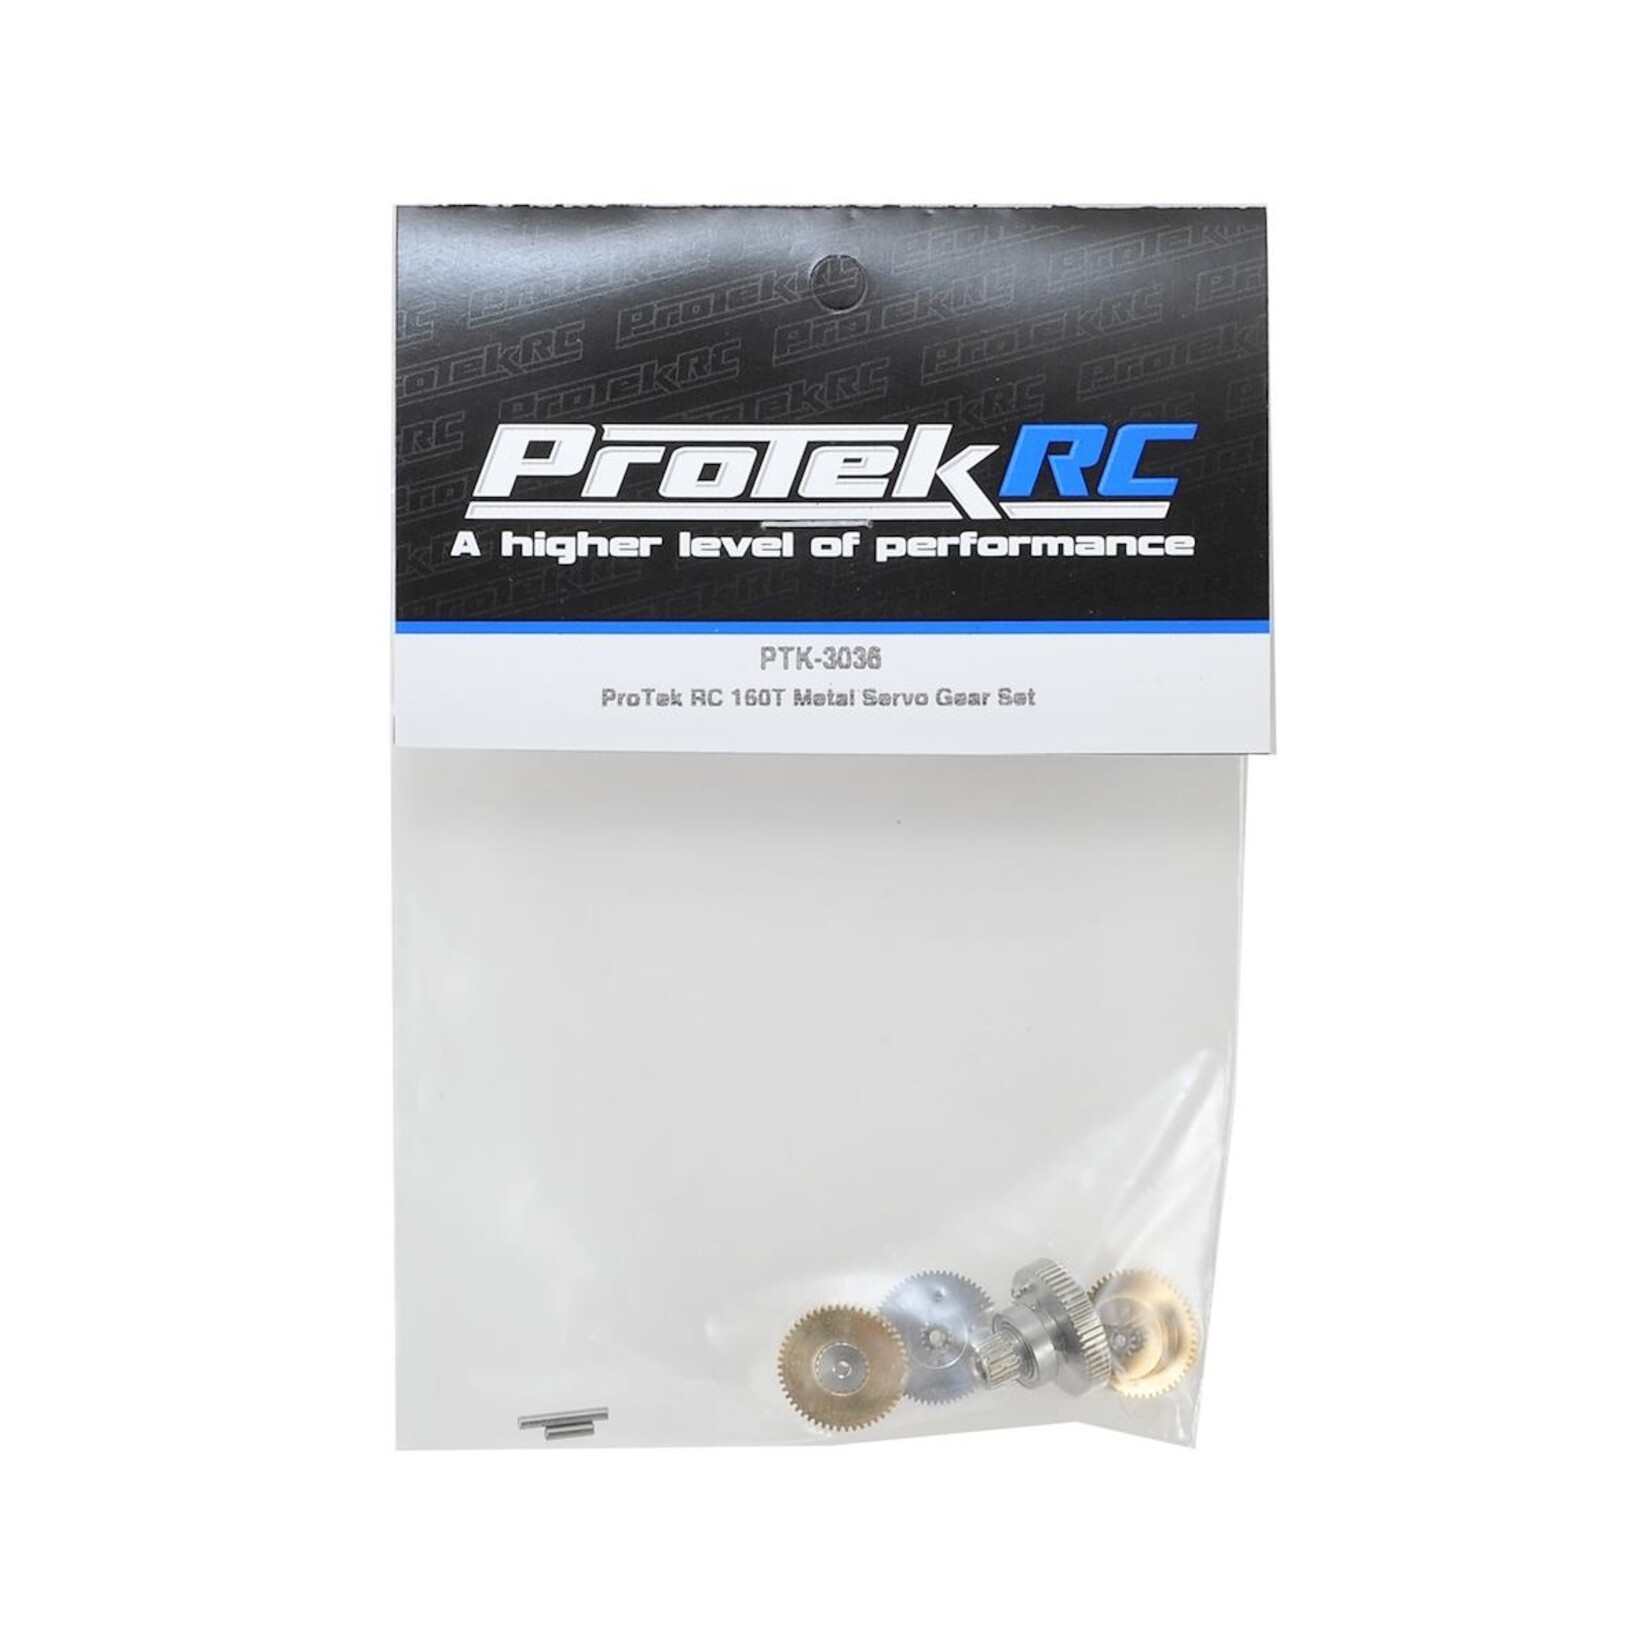 ProTek RC ProTek RC 160T Metal Servo Gear Set #PTK-3036